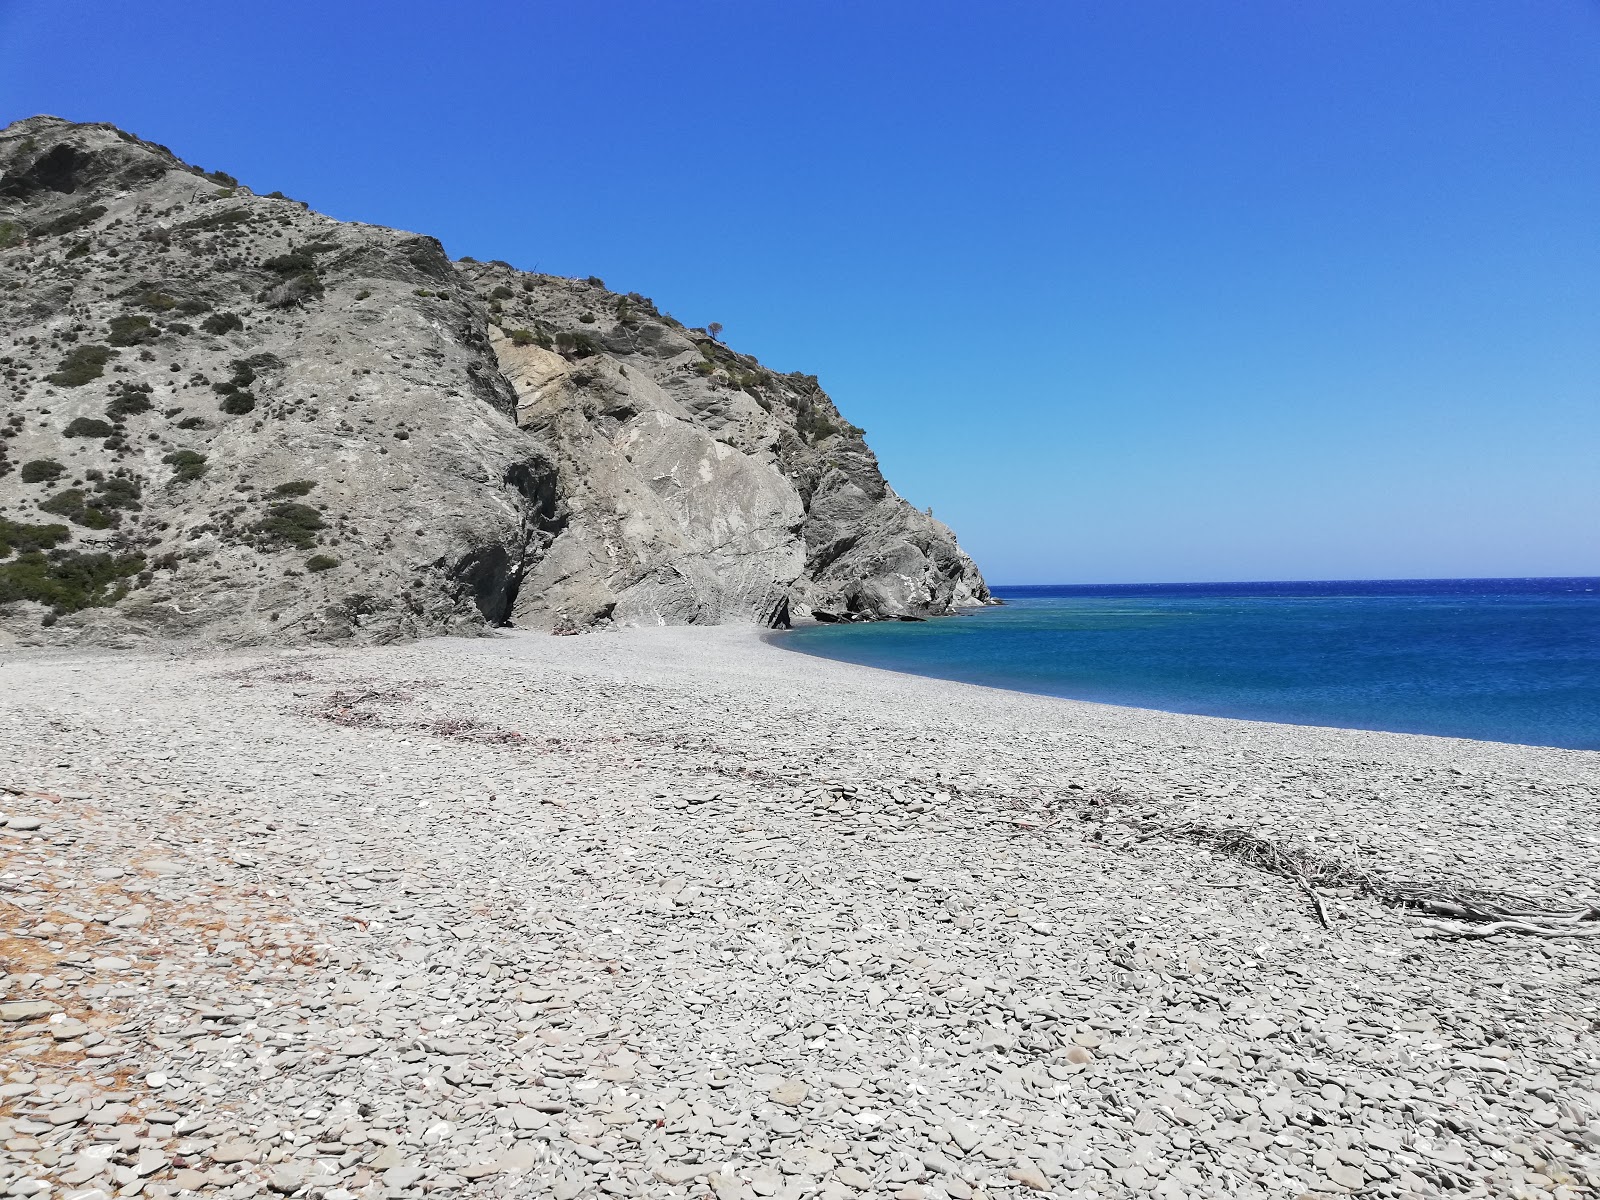 Zdjęcie Agnotia beach położony w naturalnym obszarze